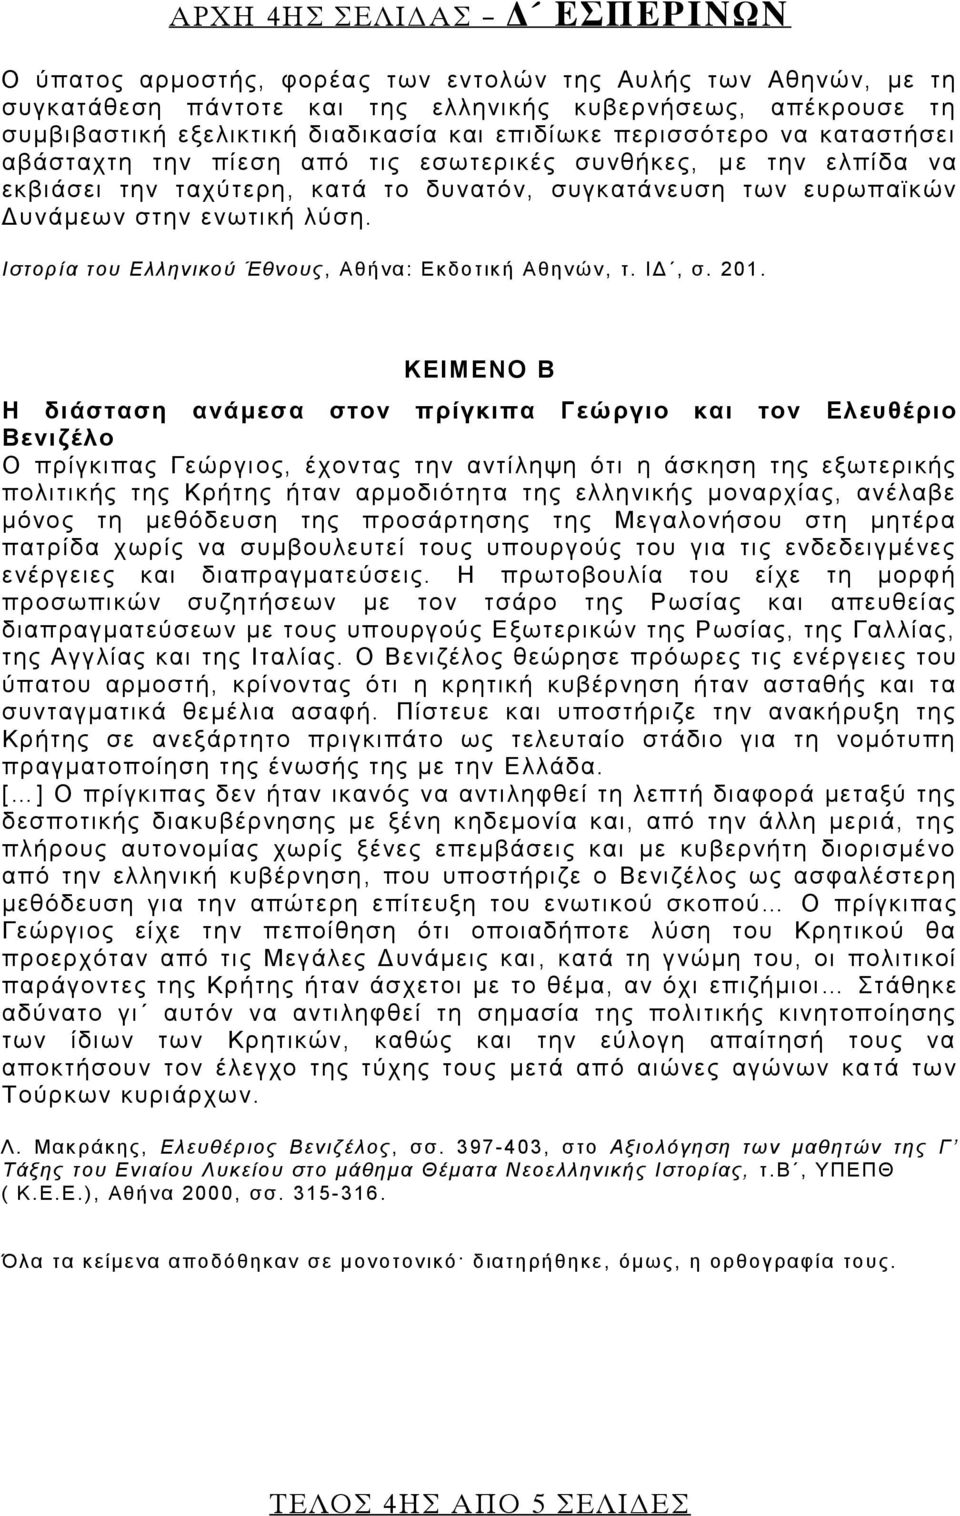 Ιστορία του Ελληνικού Έθνους, Αθήνα: Εκδοτική Αθηνών, τ. ΙΔ, σ. 201.